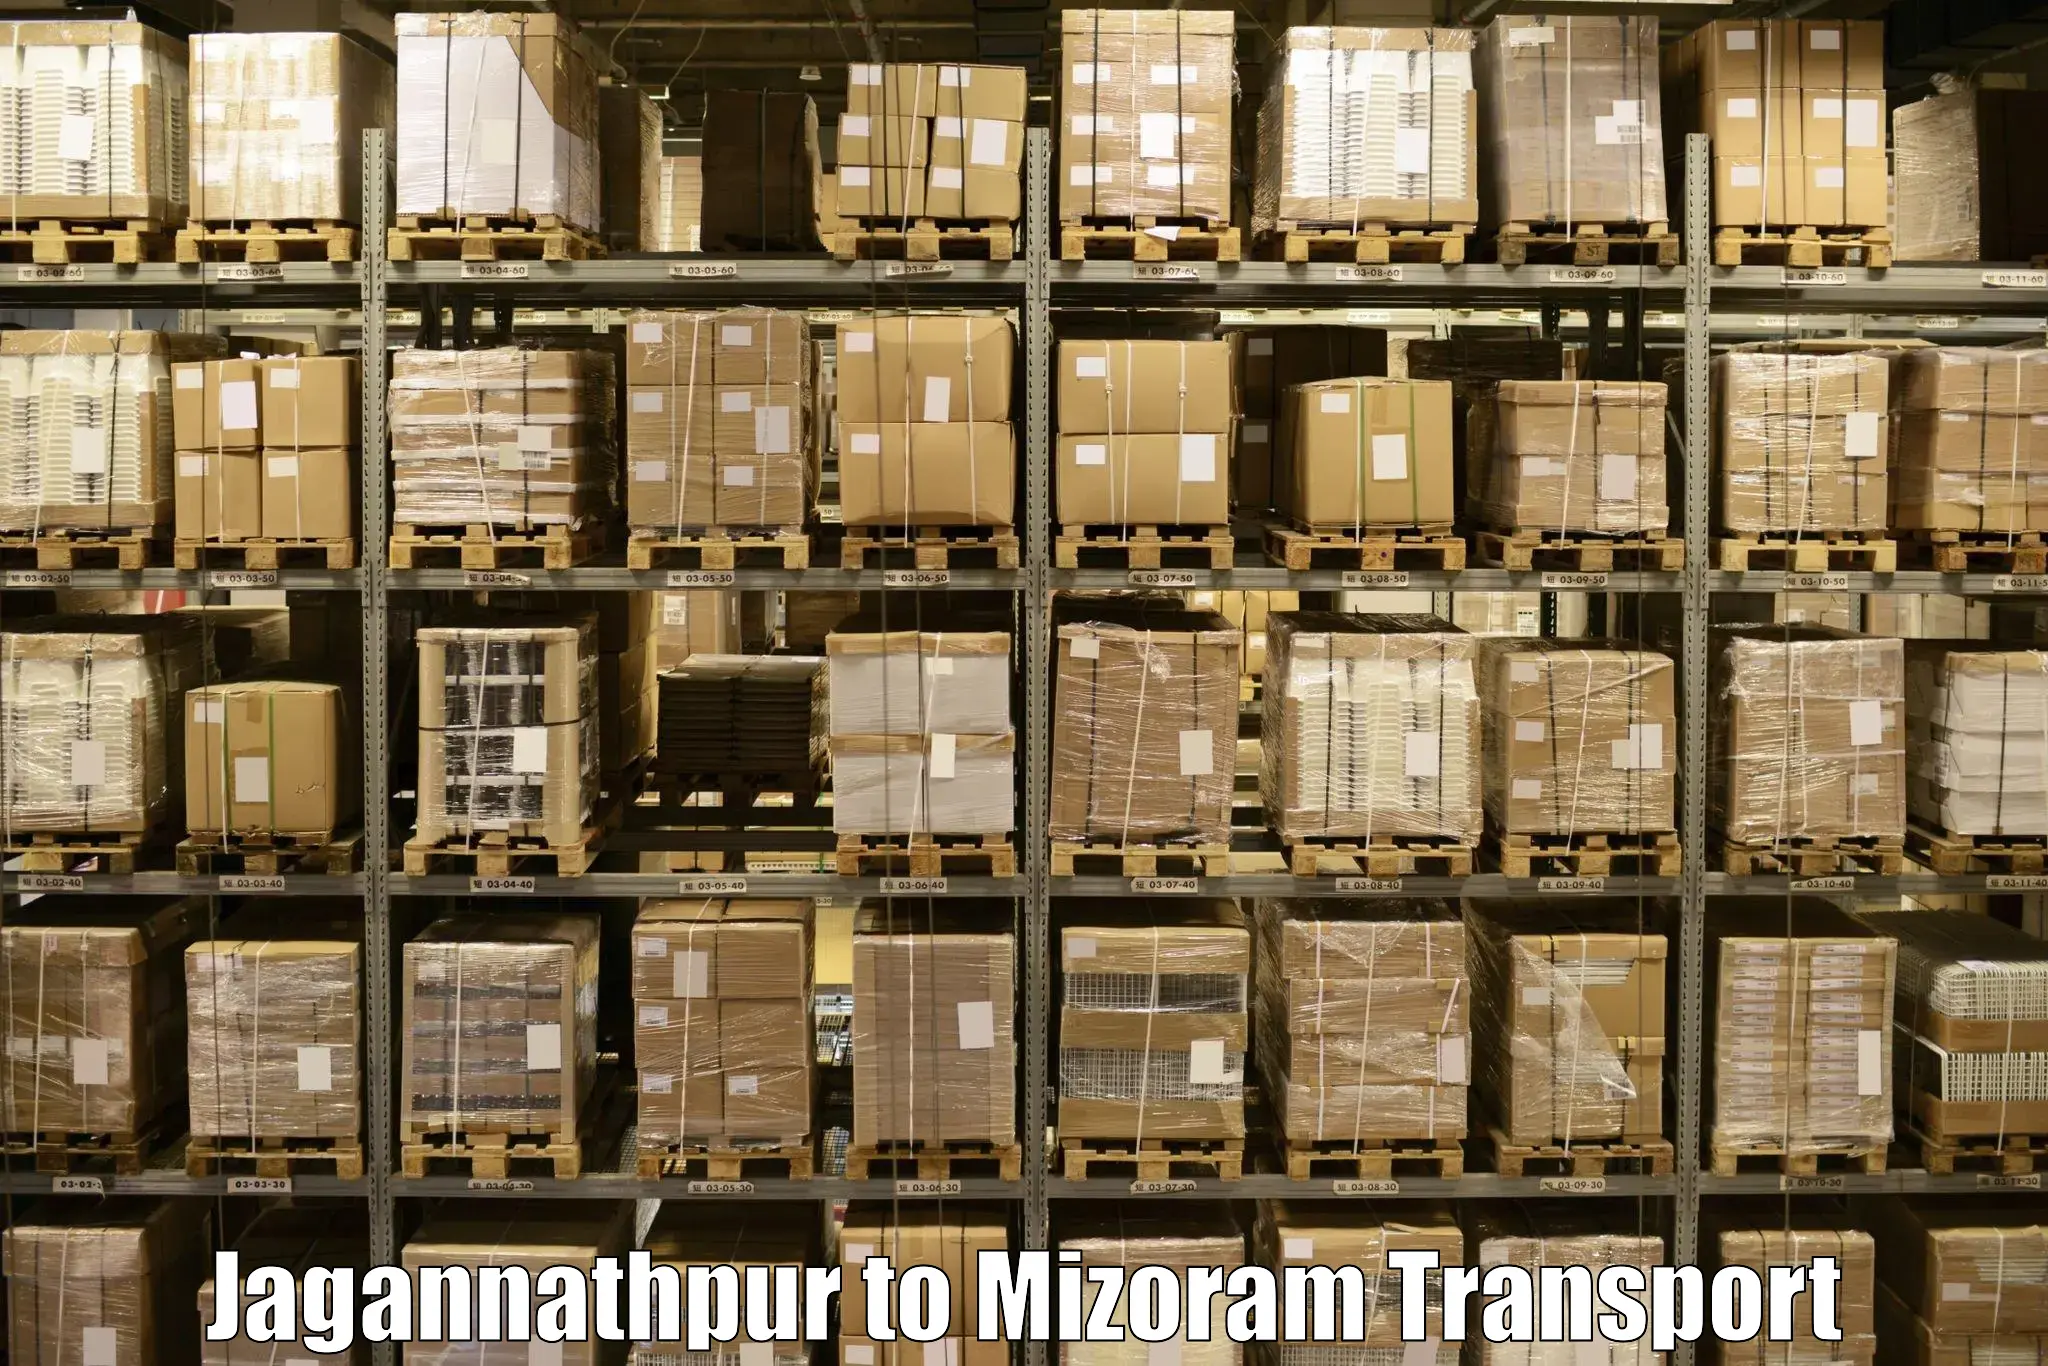 Shipping partner in Jagannathpur to Mizoram